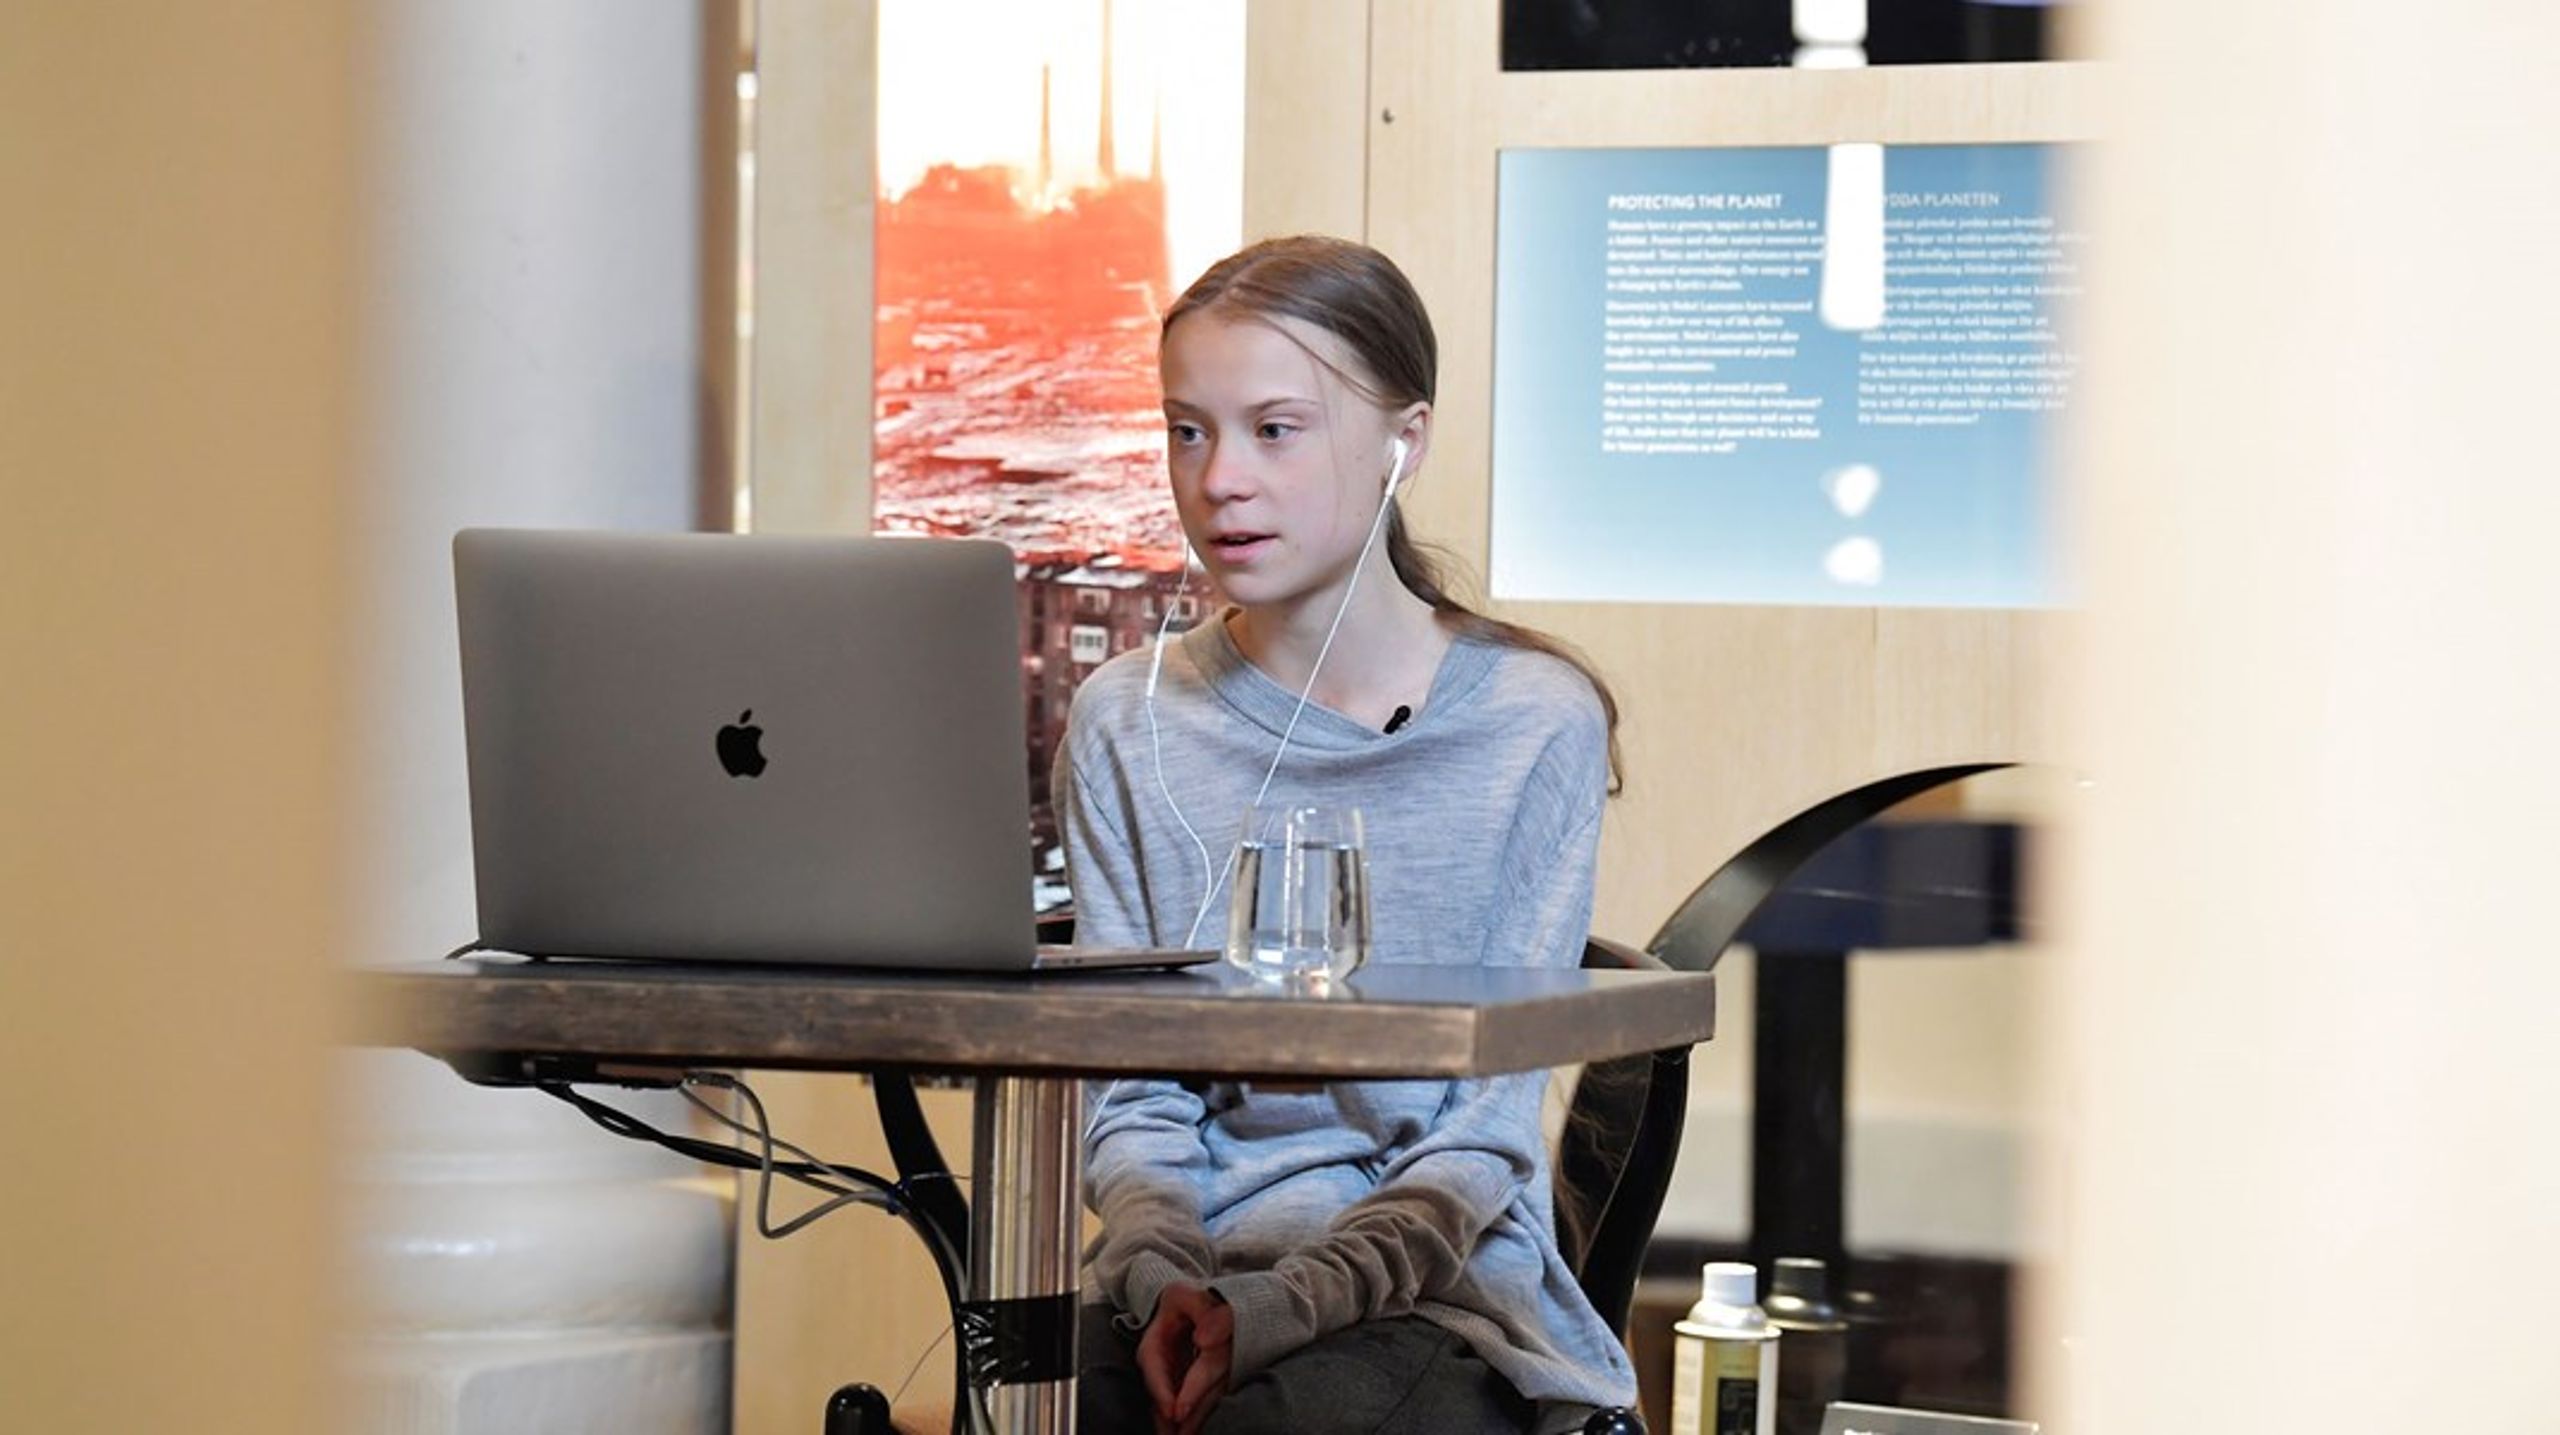 Teknologien har brug for en stemme som Greta Thunbergs til at hjælpe en stærkere uddannelsespolitisk dagsorden på området på vej, mener ansatte ved Institut for Læreruddannelse ved Københavns Professionshøjskole.